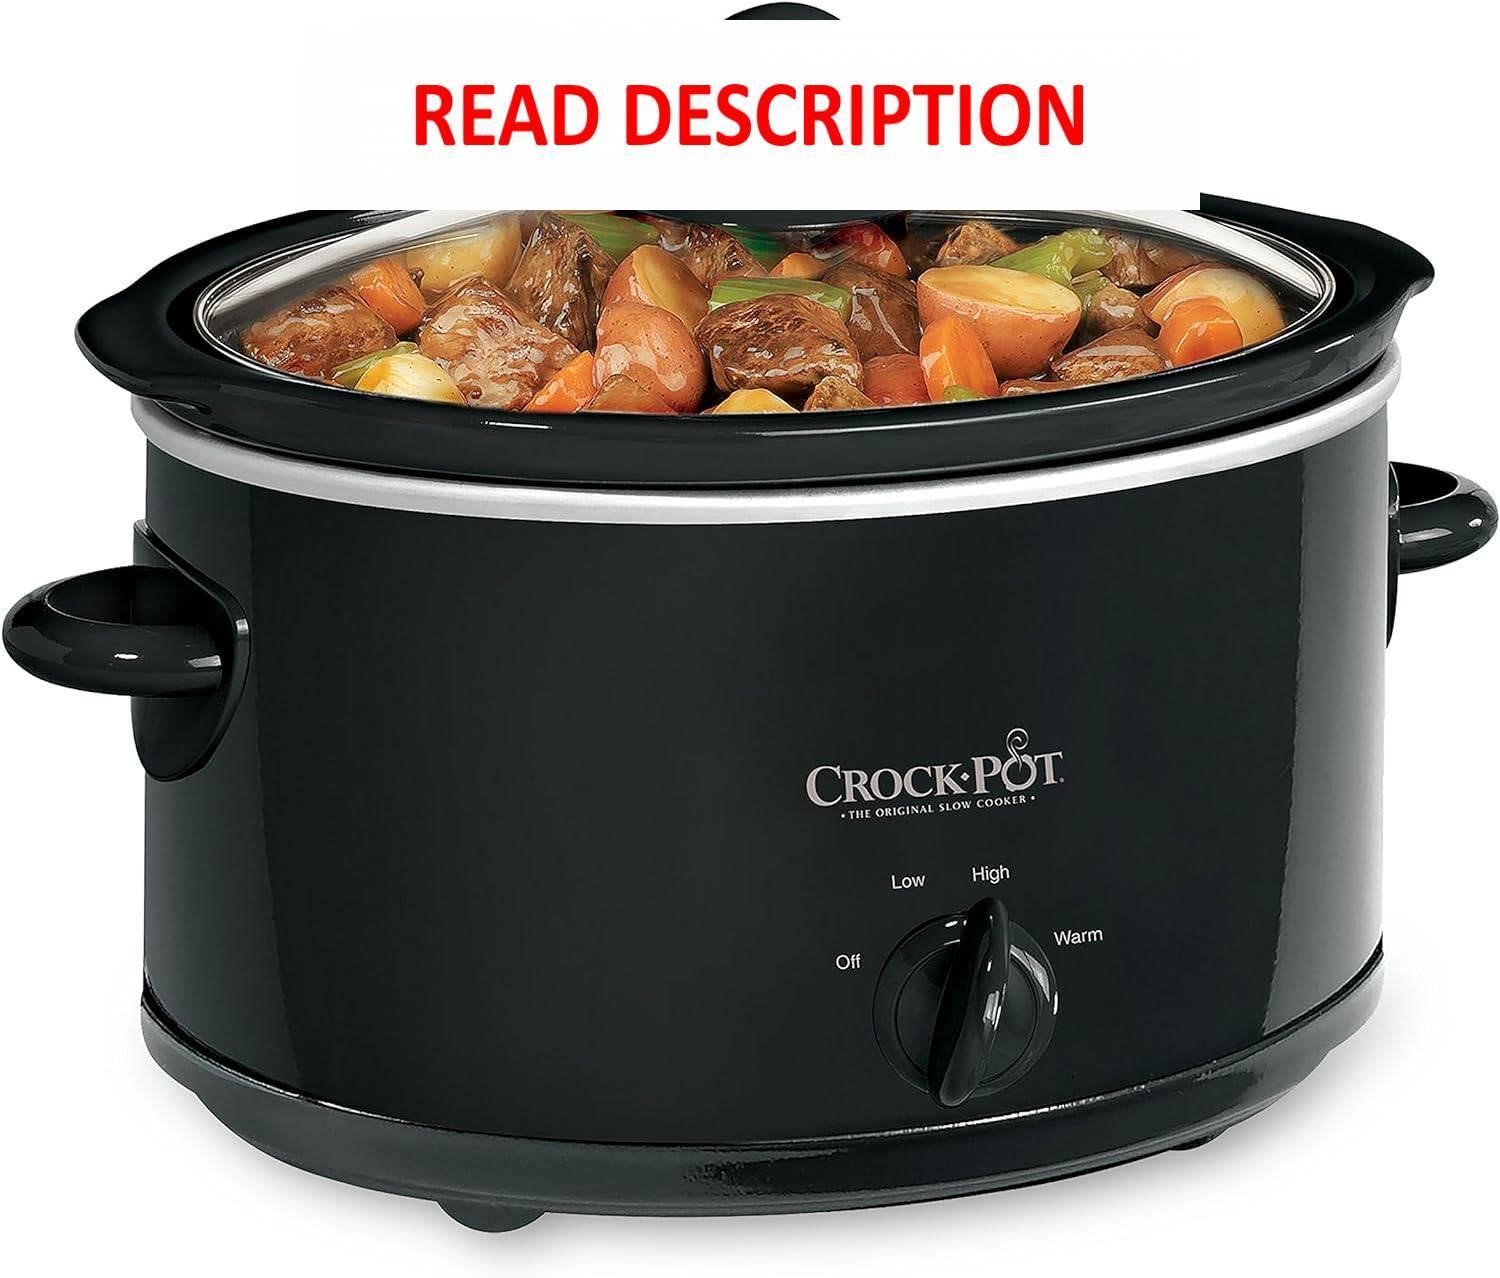 $94  Crock-Pot 4-Quart Manual Slow Cooker  Black